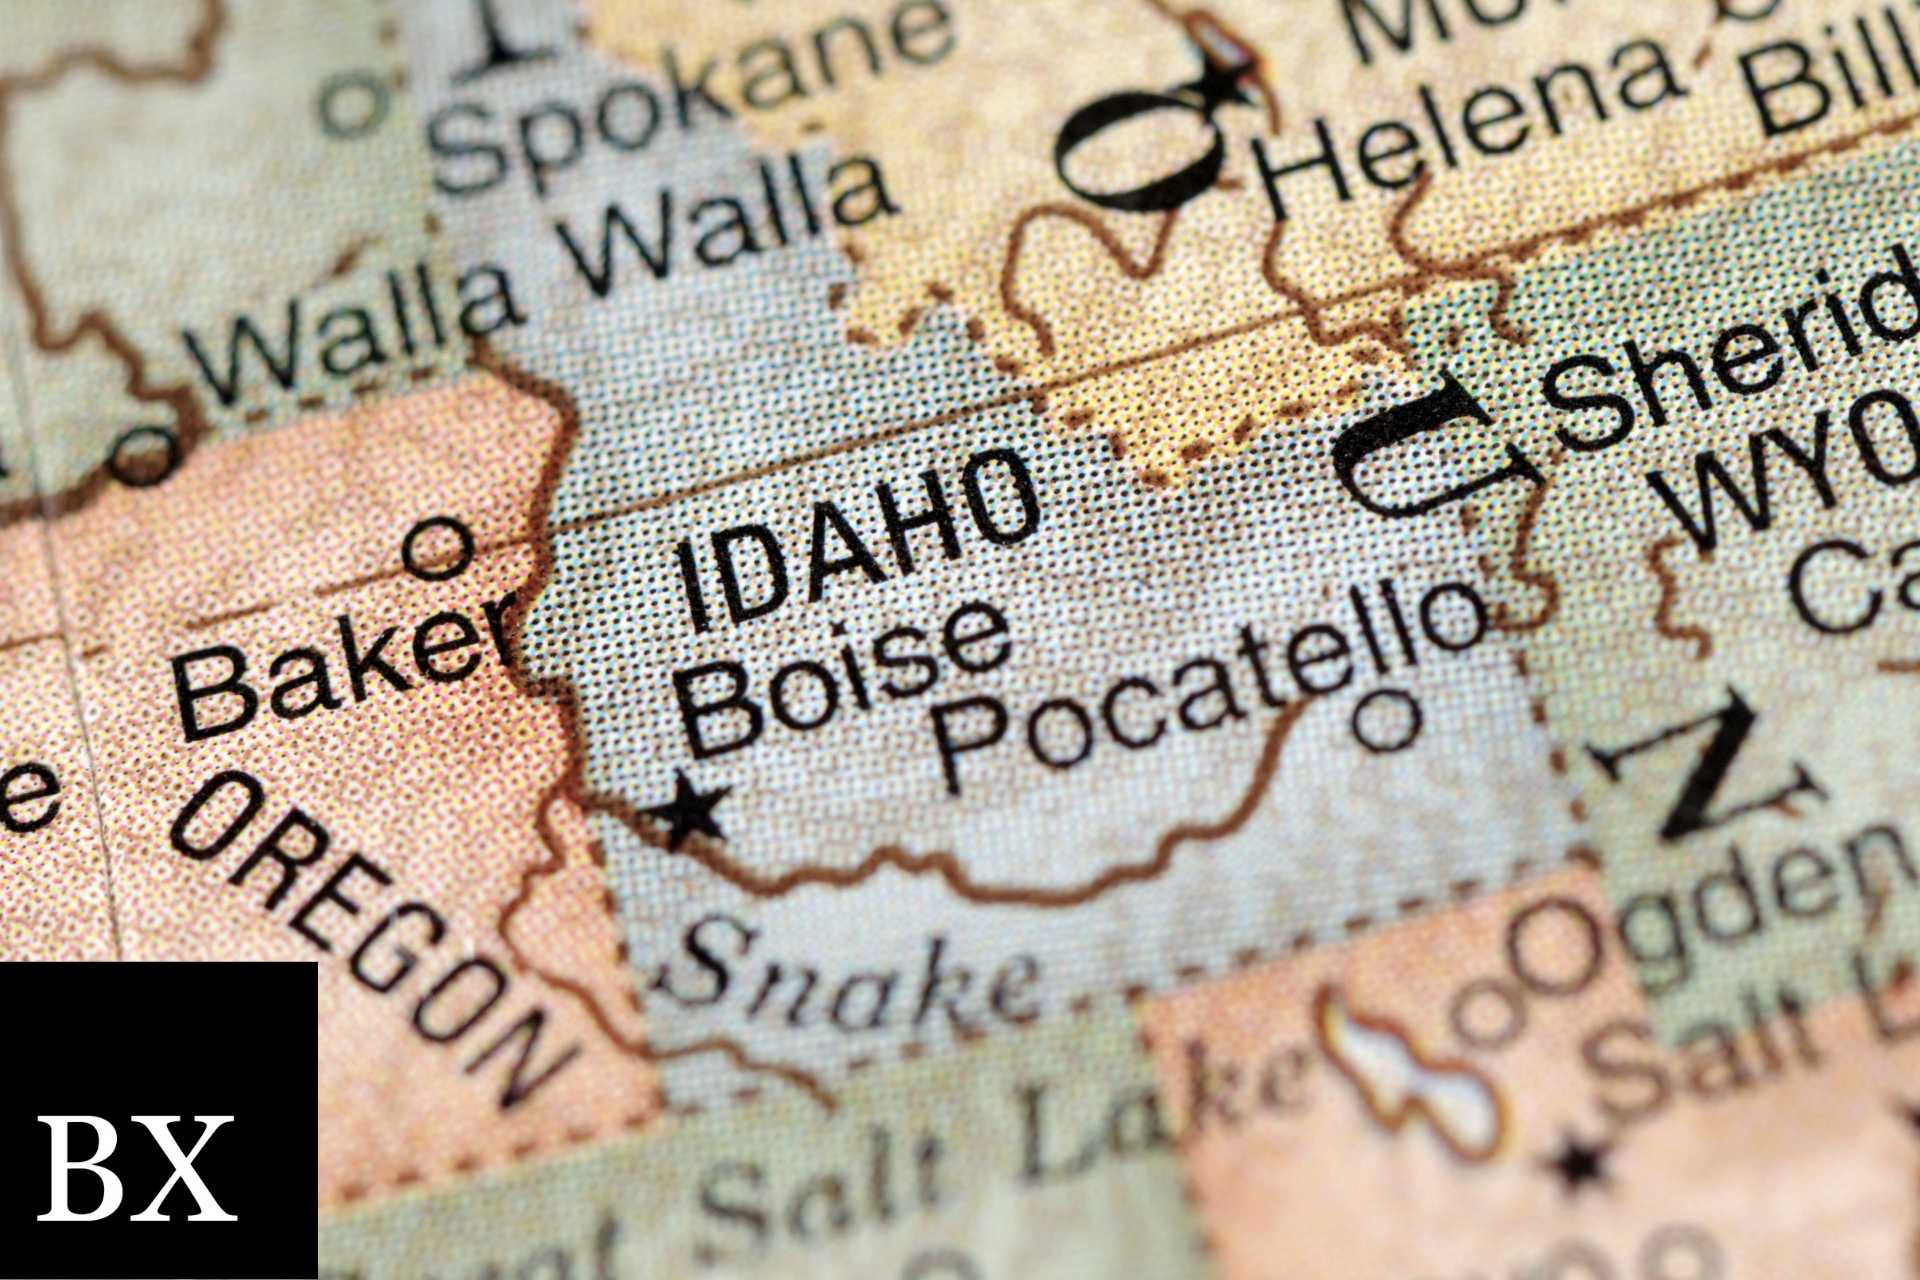 Idaho HVAC Contractor / Specialty Contractor Certification Bond